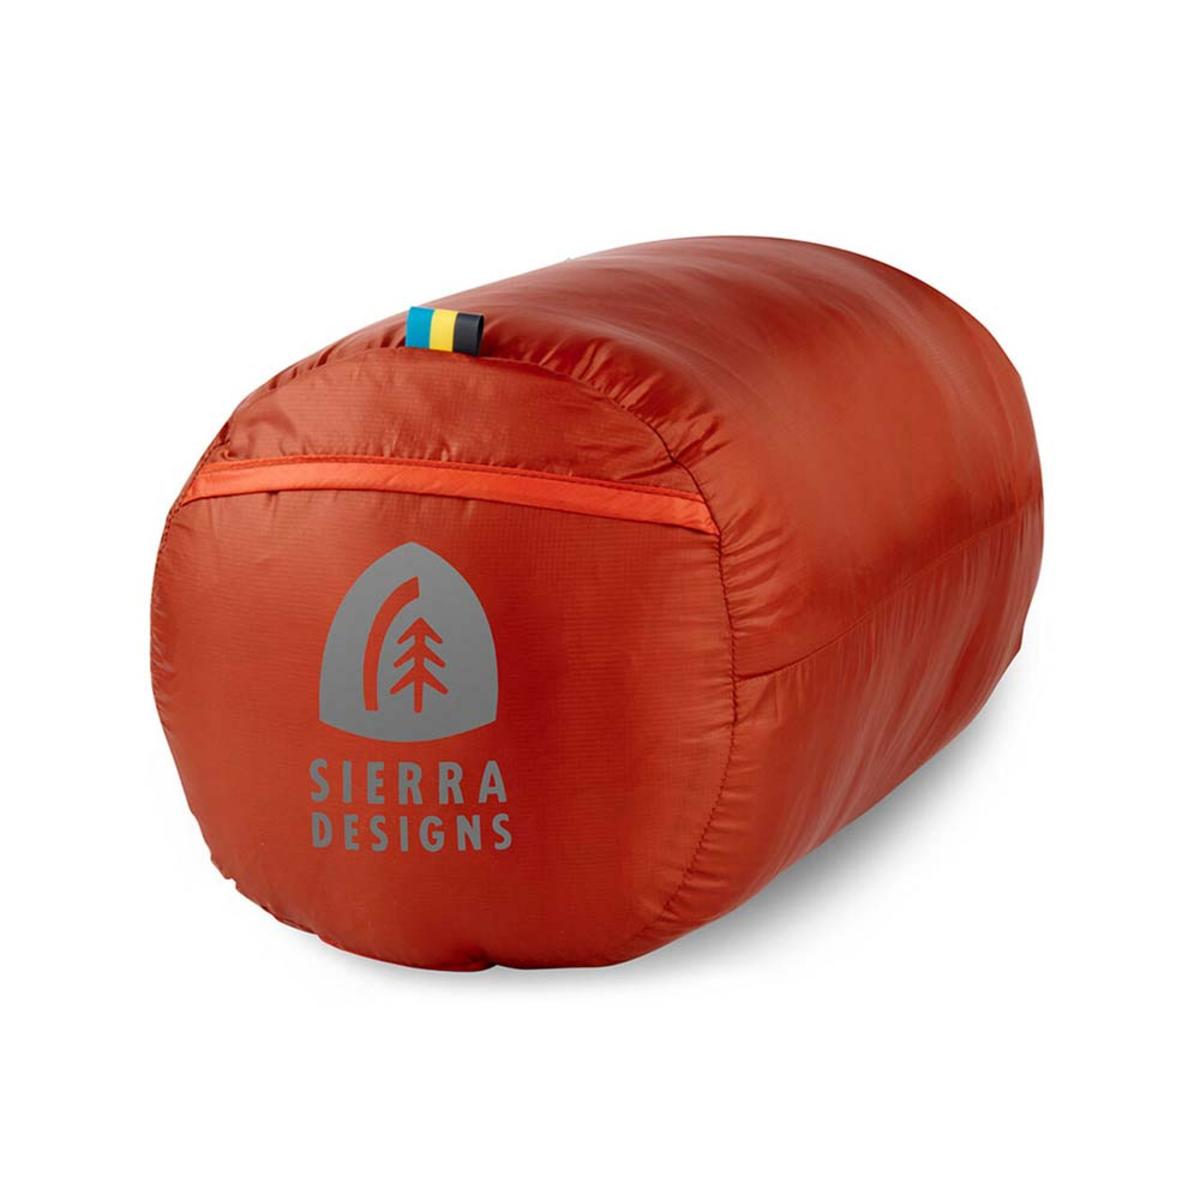 Sierra Designs Get Down 550F 35 Degree Sleeping Bag - Regular